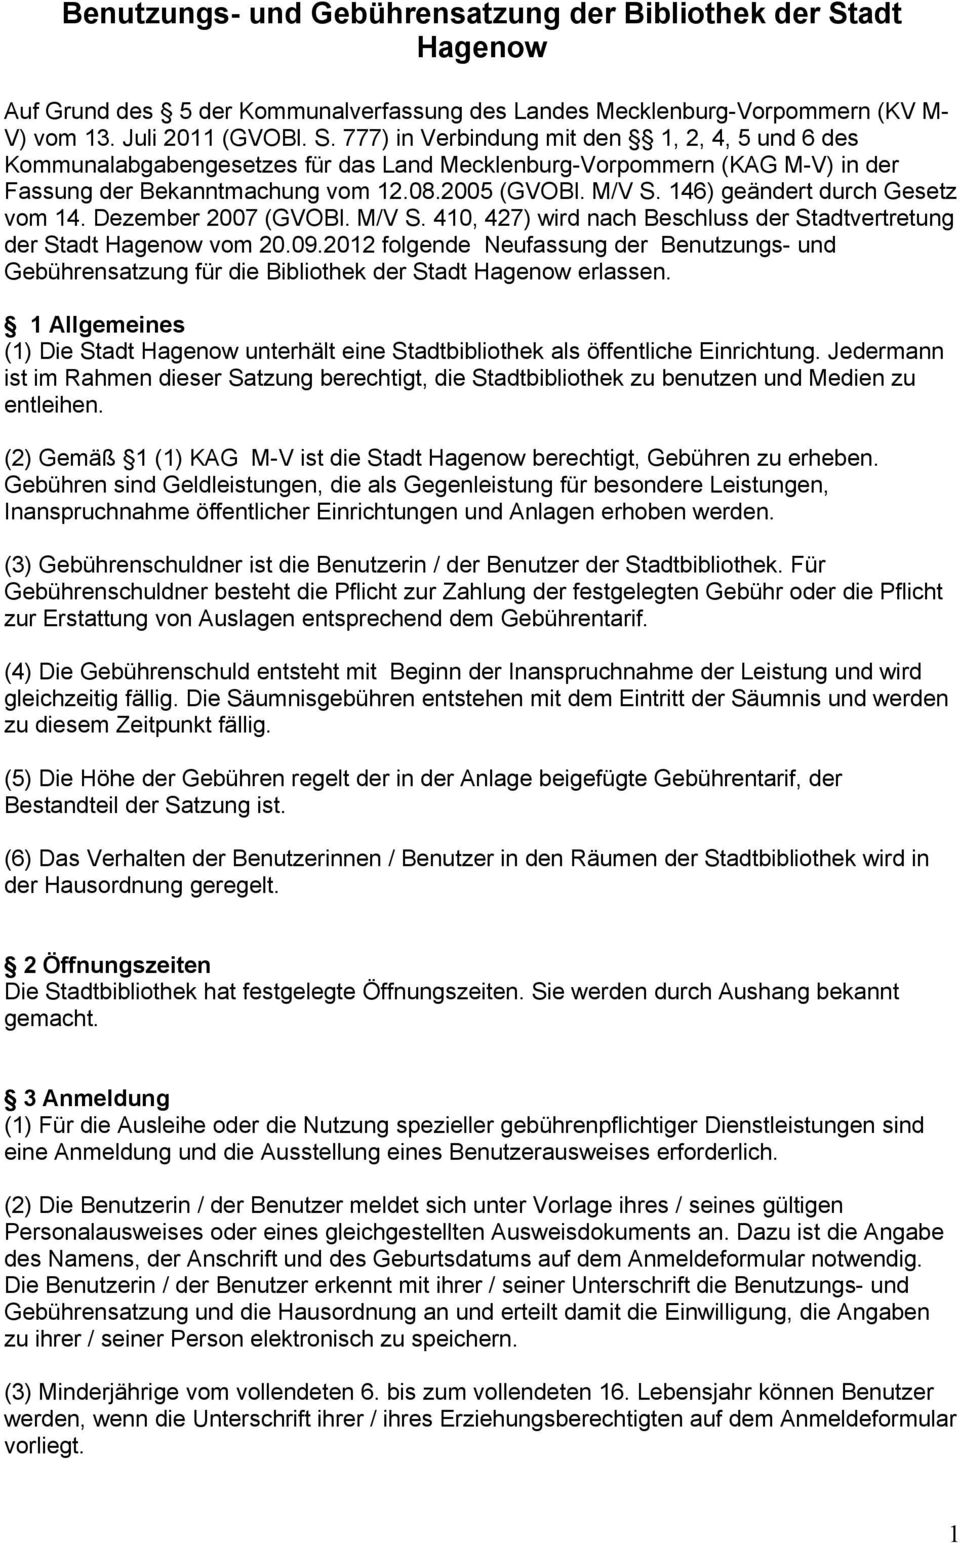 777) in Verbindung mit den 1, 2, 4, 5 und 6 des Kommunalabgabengesetzes für das Land Mecklenburg-Vorpommern (KAG M-V) in der Fassung der Bekanntmachung vom 12.08.2005 (GVOBl. M/V S.